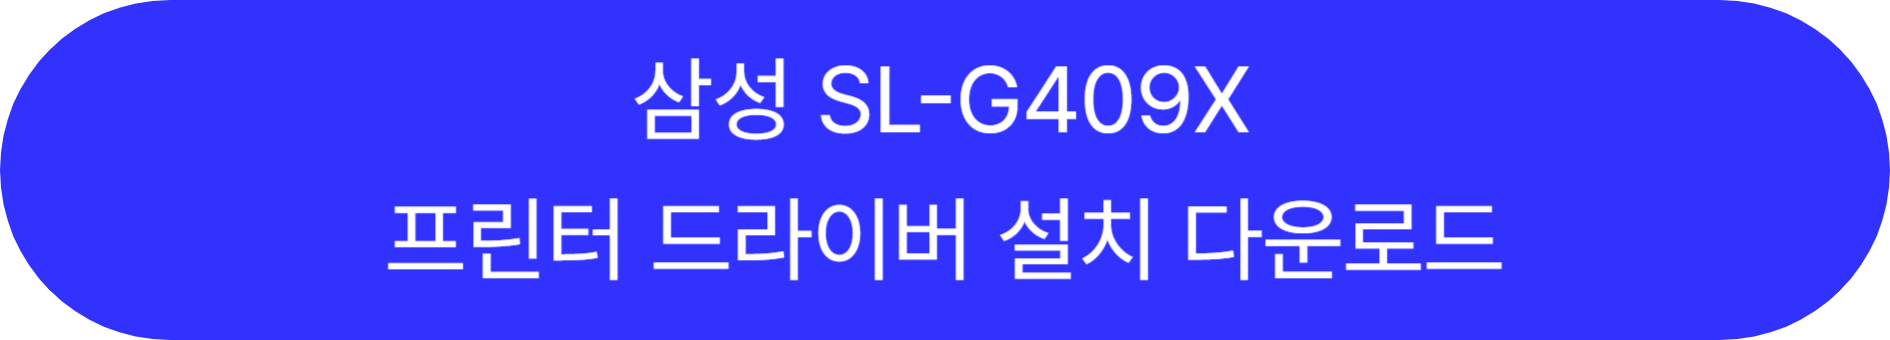 SL-G409X 바로가기